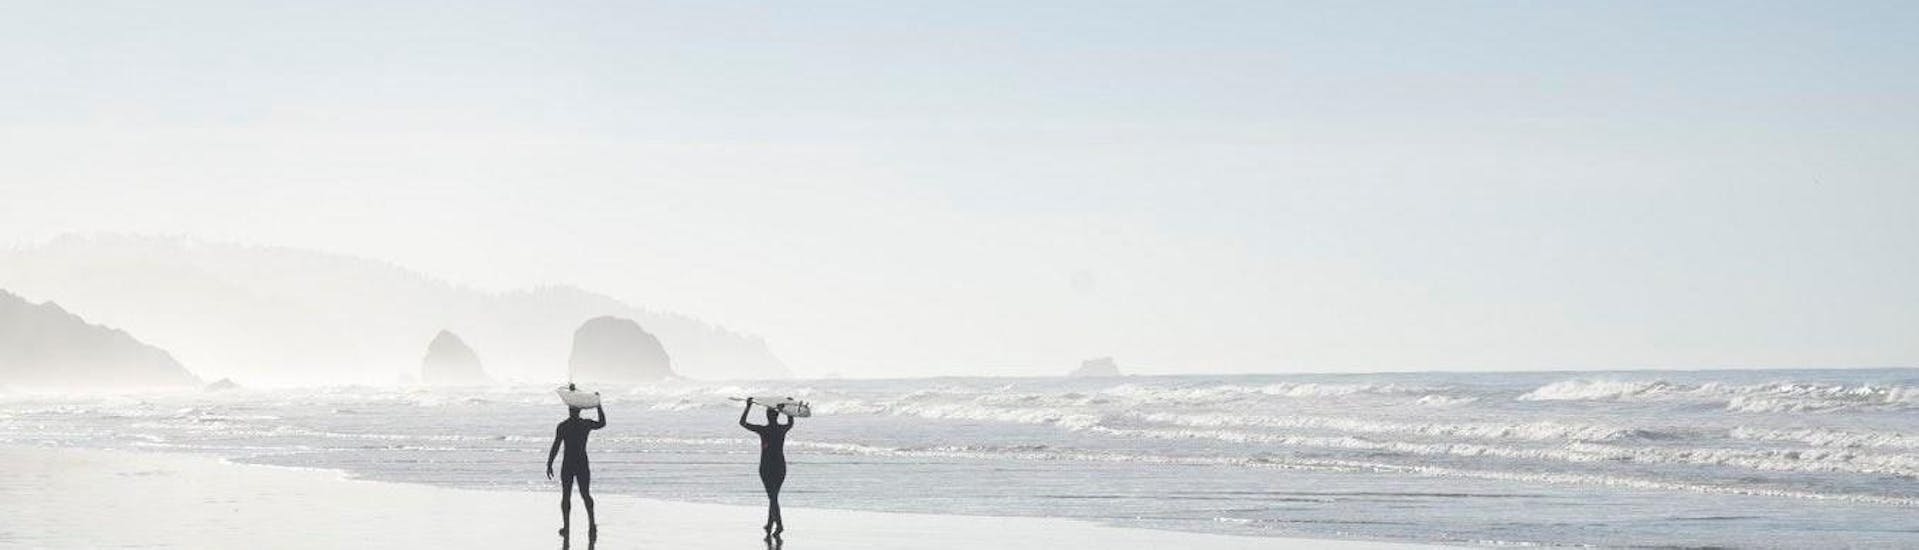 2 surfistas paseando por la playa durante Clases Privadas de Surf en Costa Vicentina con Pick-Up con Neptunos Surf School Algarve.